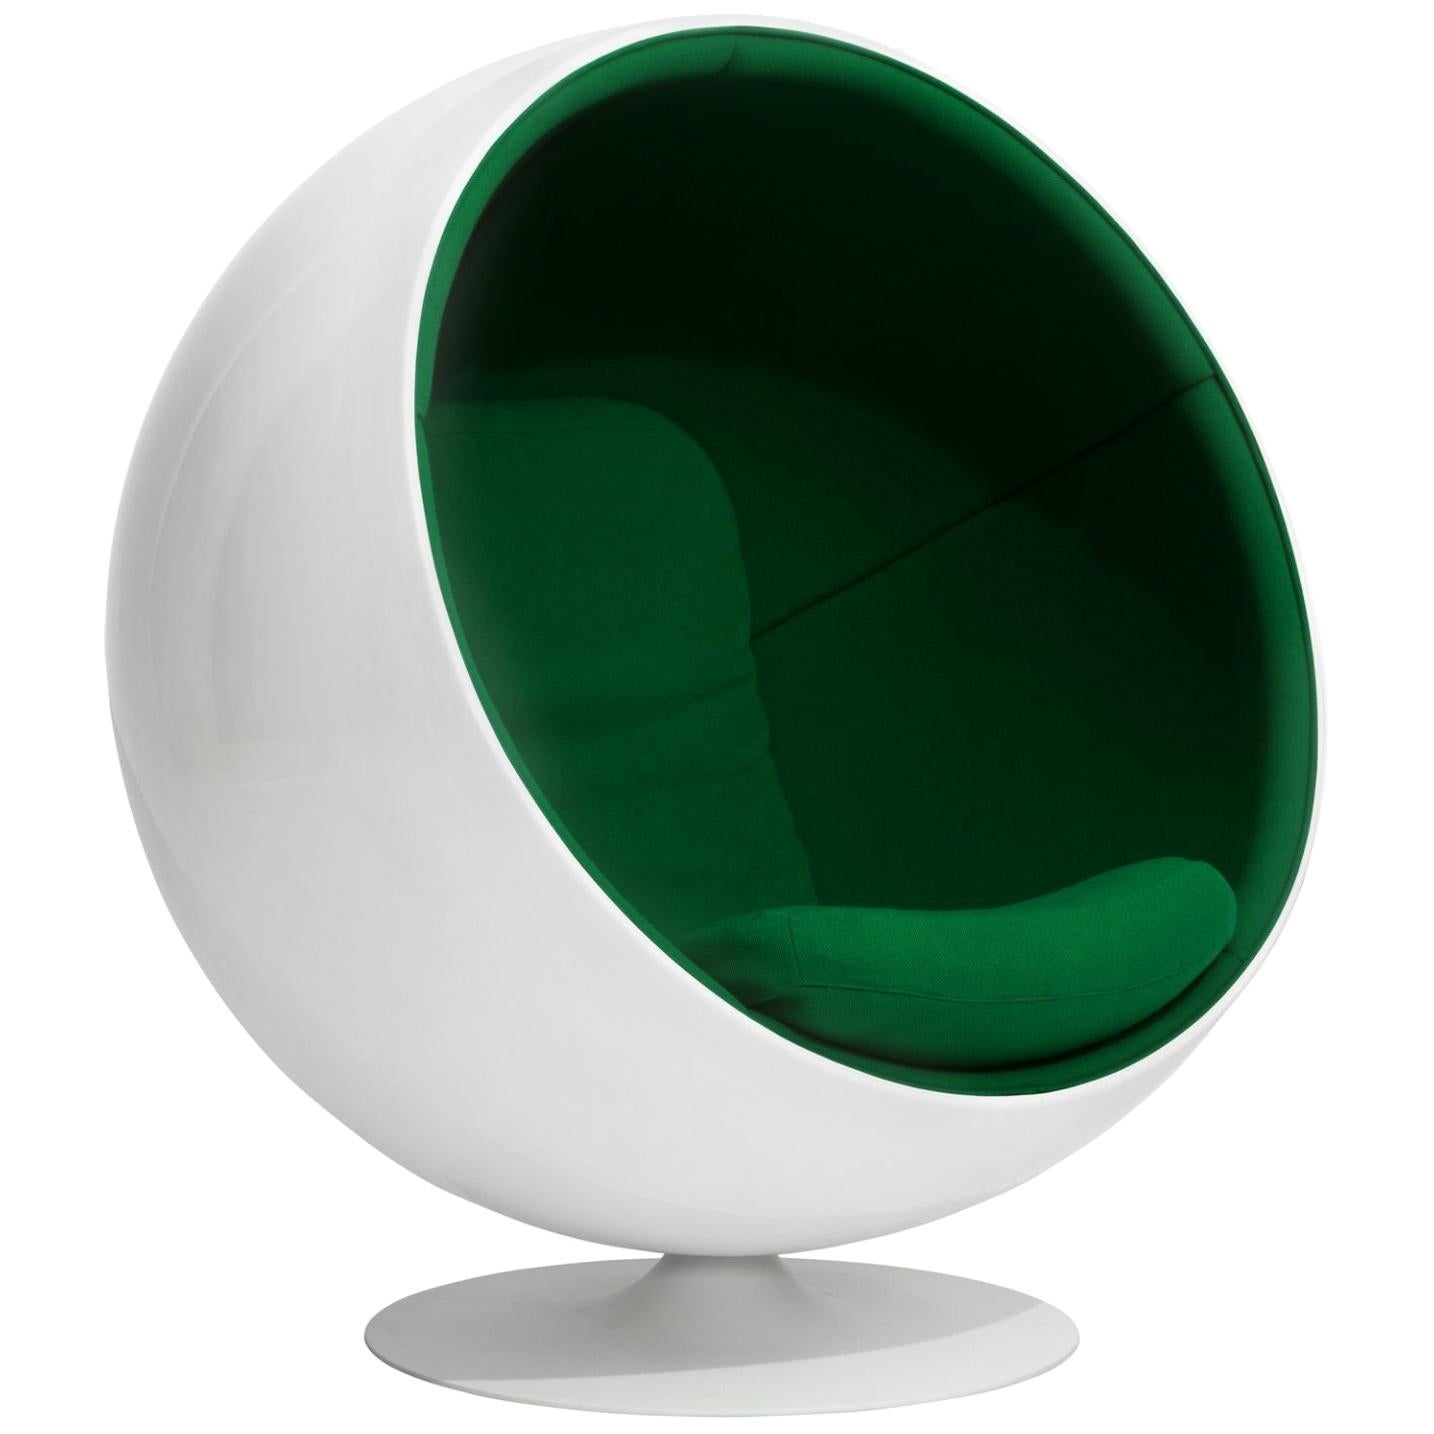 Customizable Iconic Eero Aarnio Swivel Ball Lounge Chair For Sale